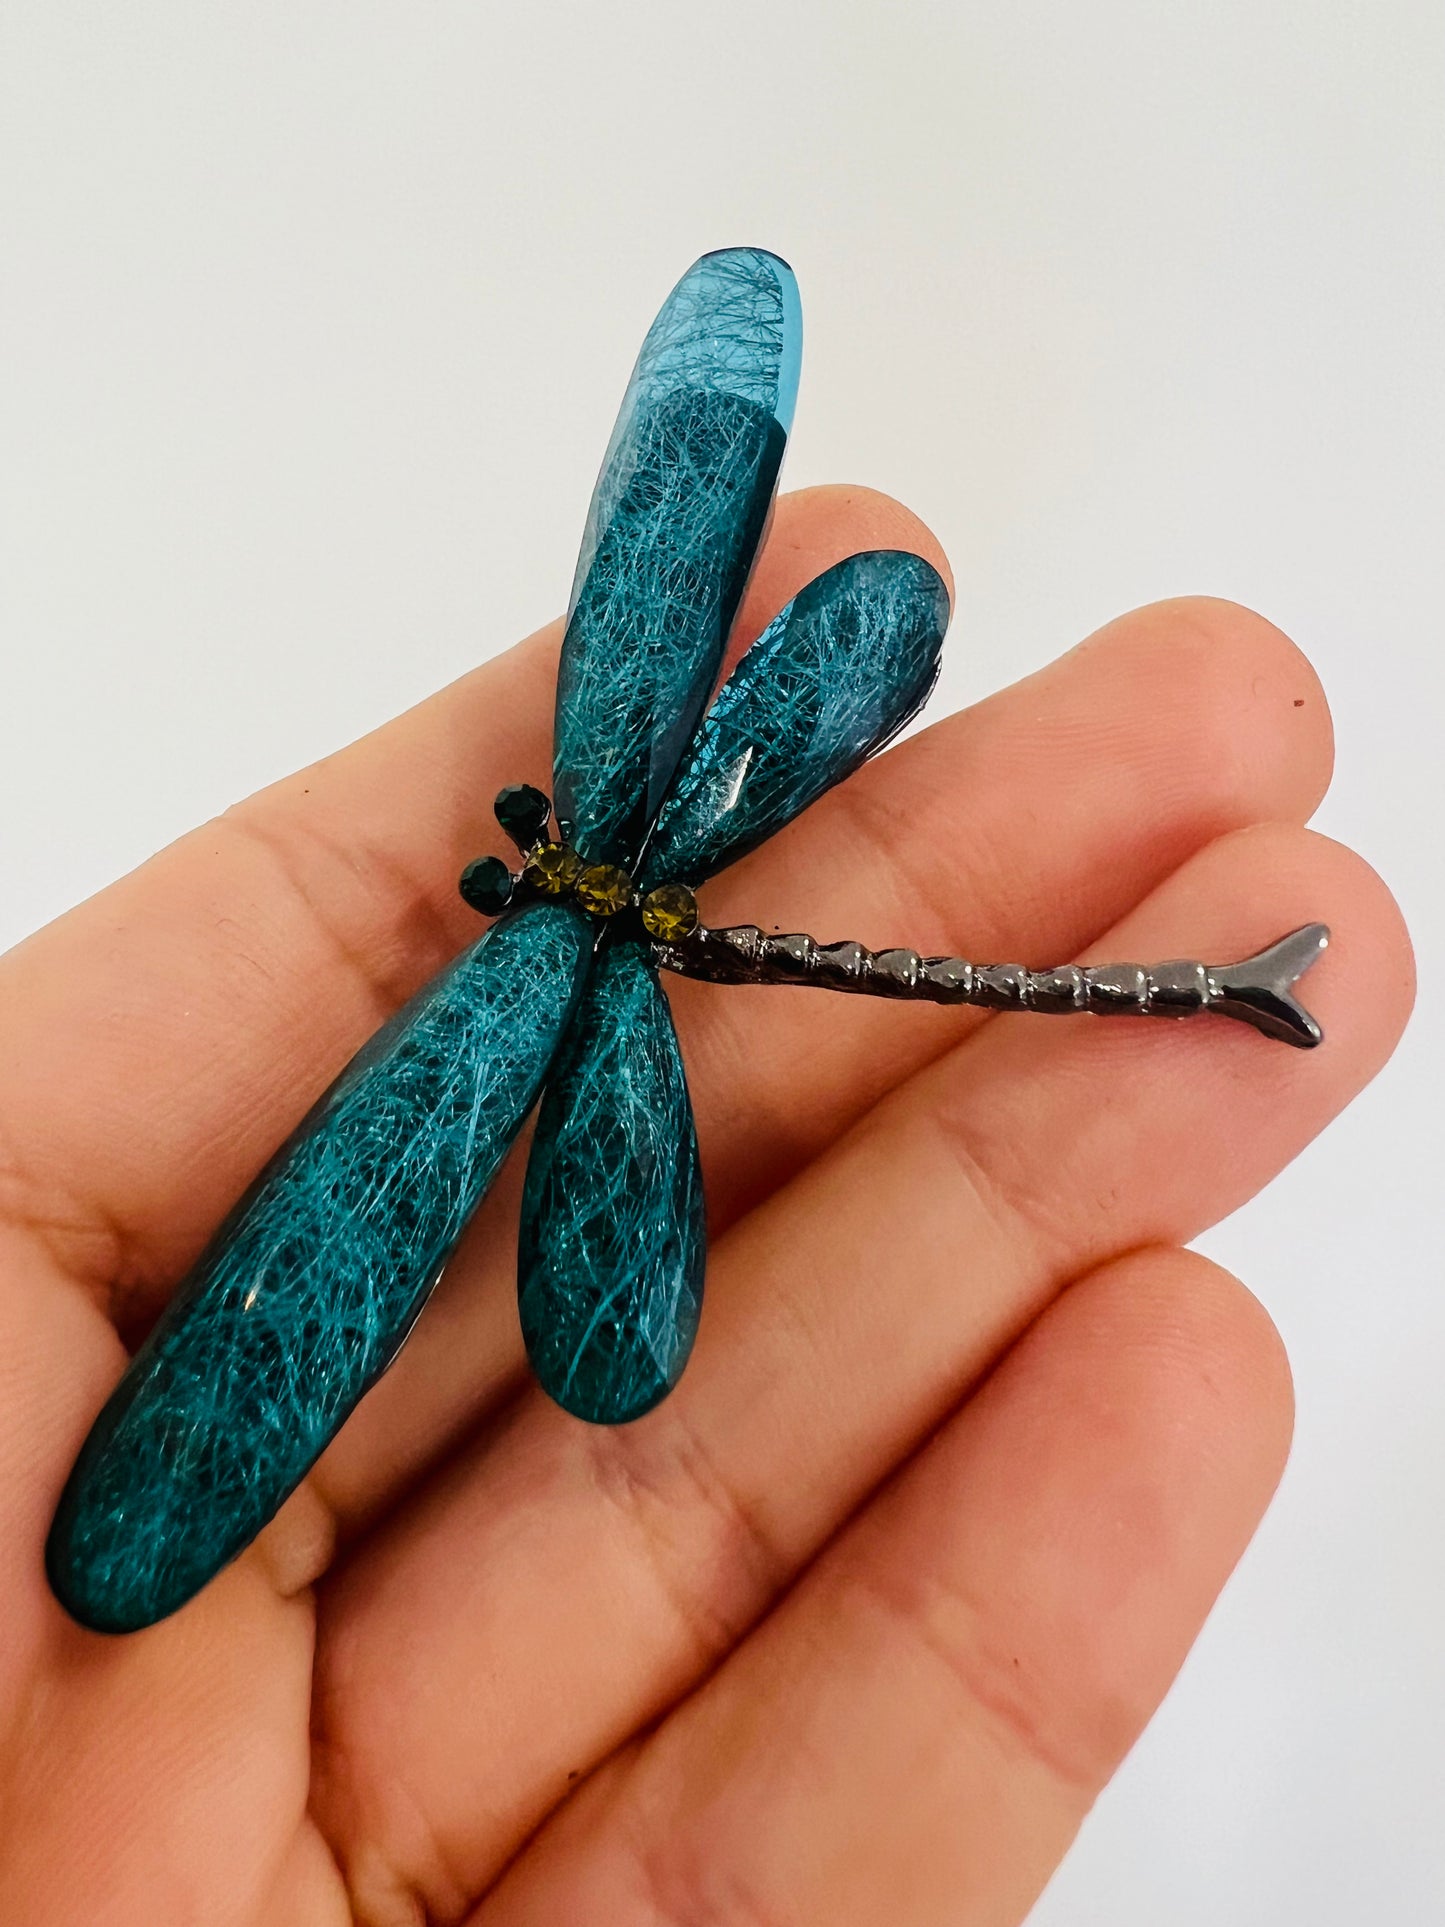 Dragonfly Brooch - Resin